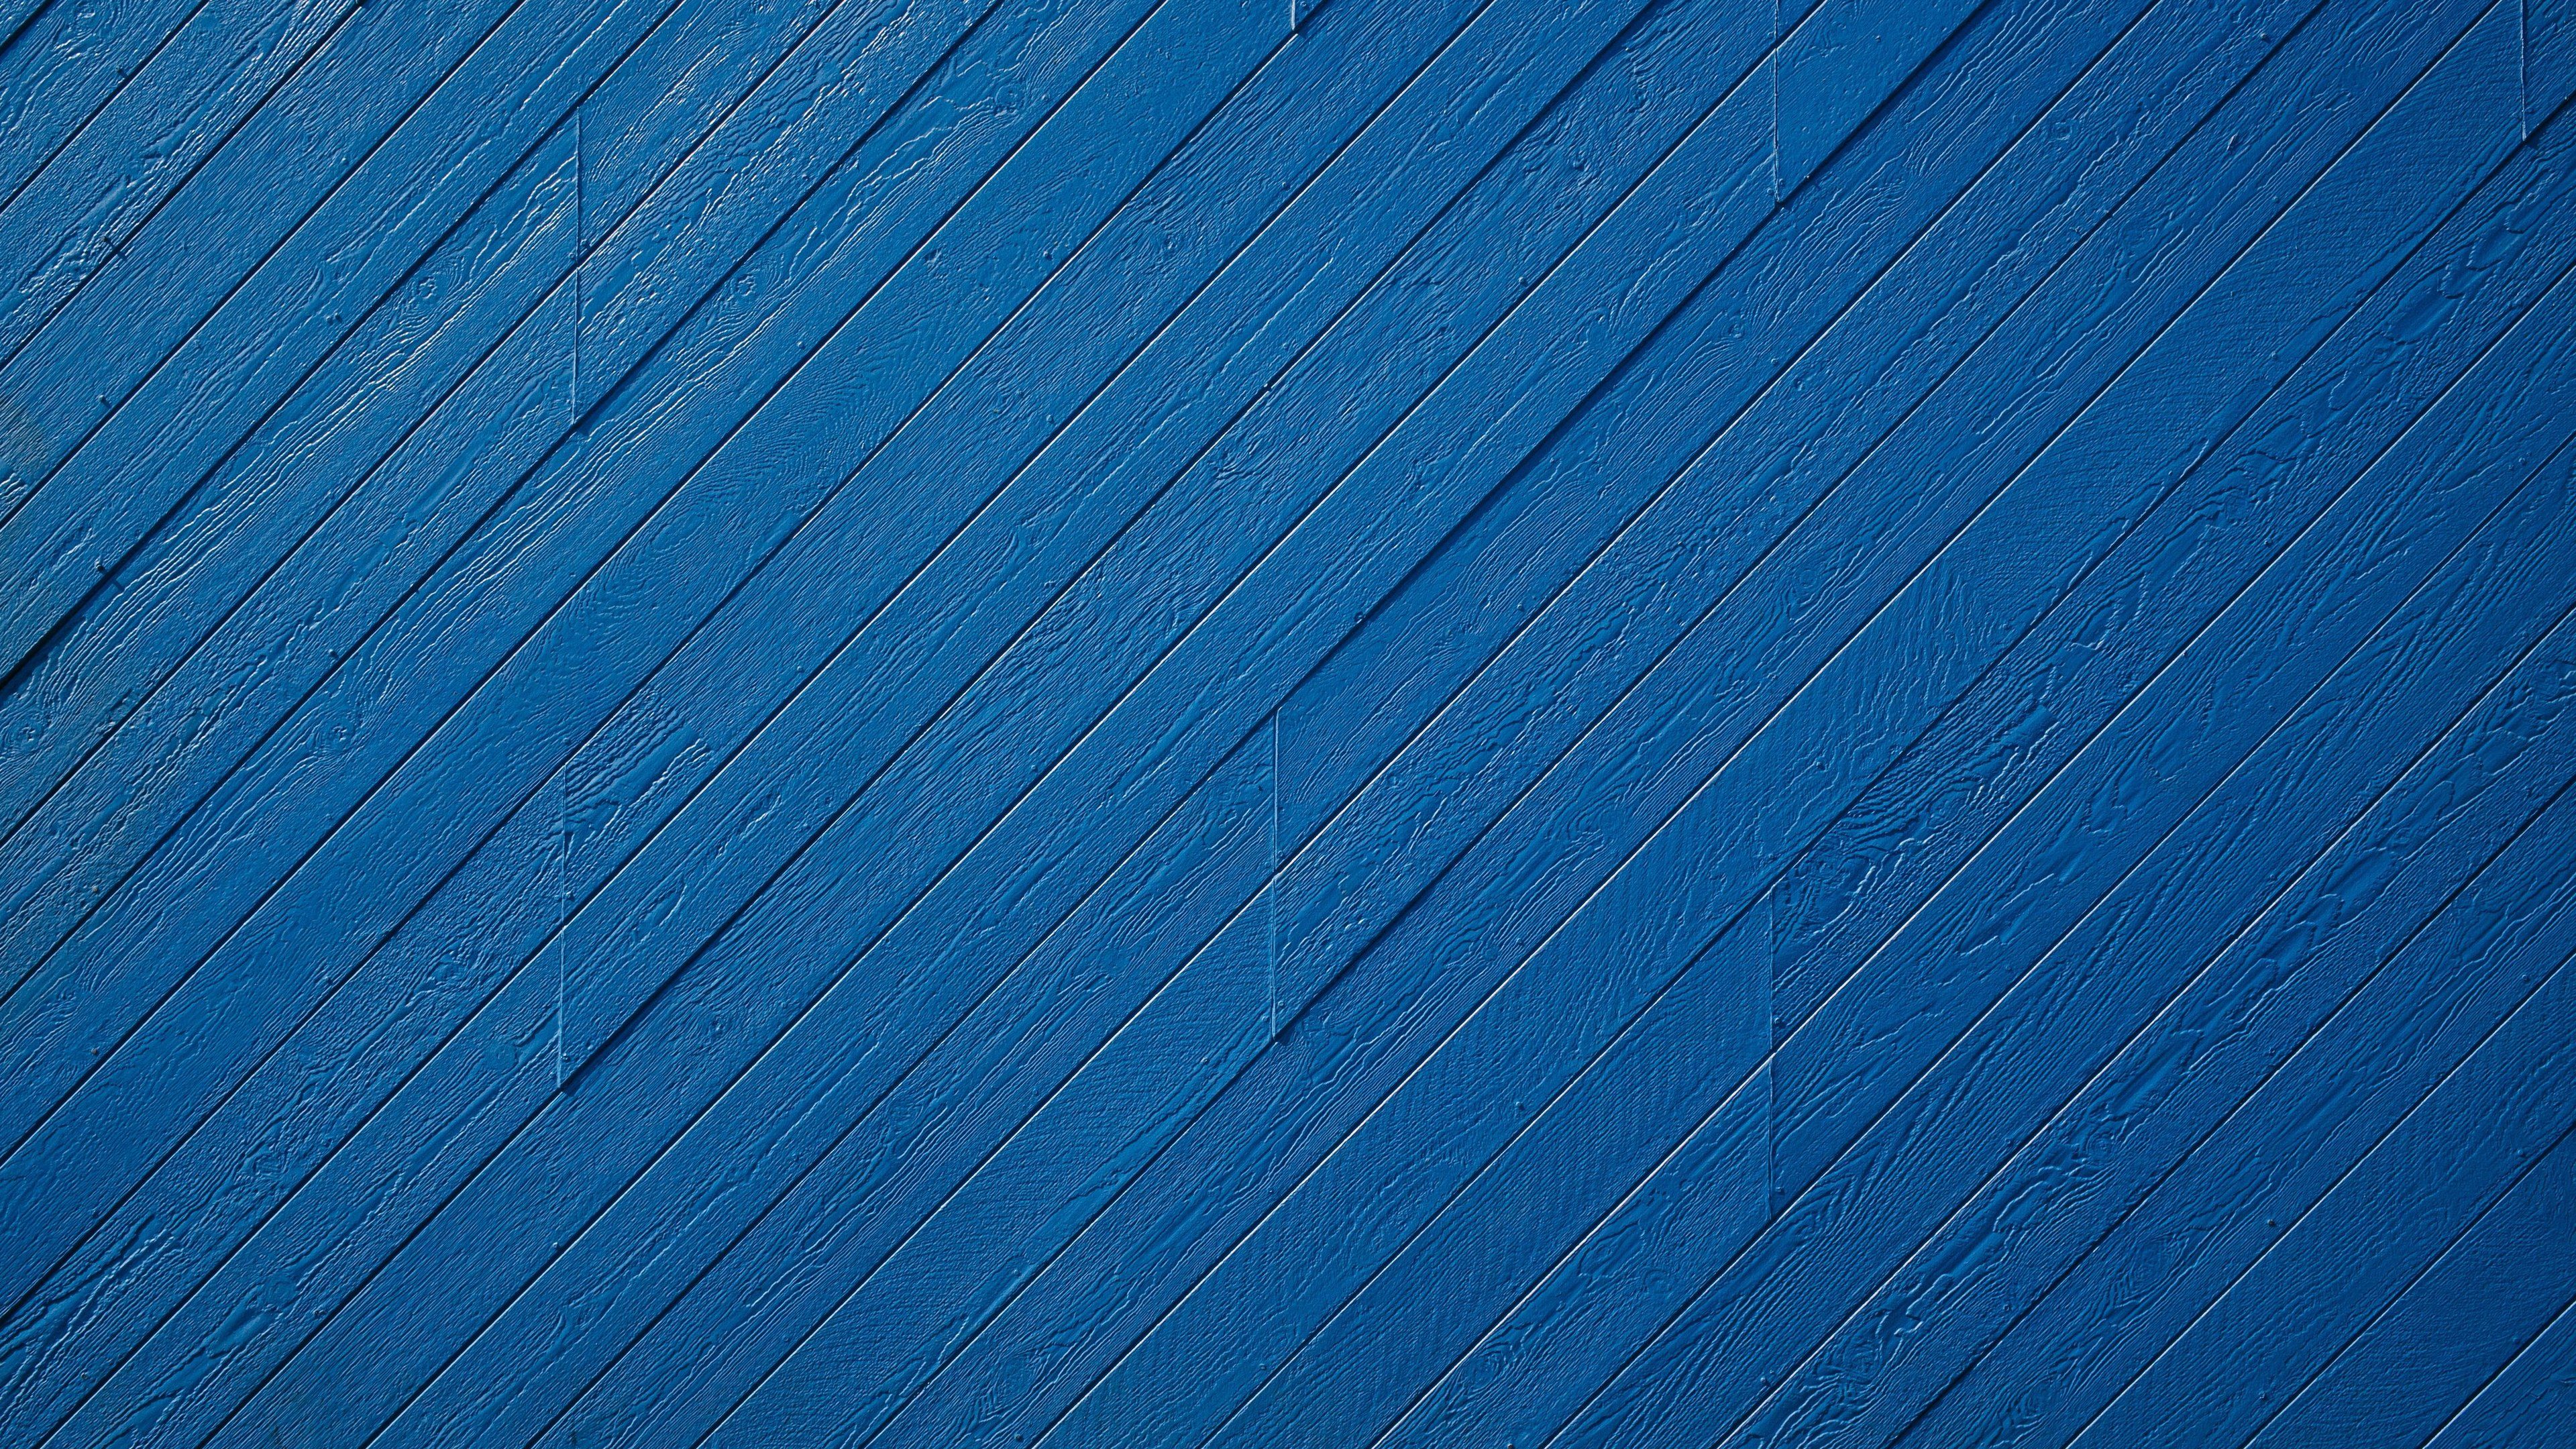 Blue Wood Pattern 4k .teahub.io